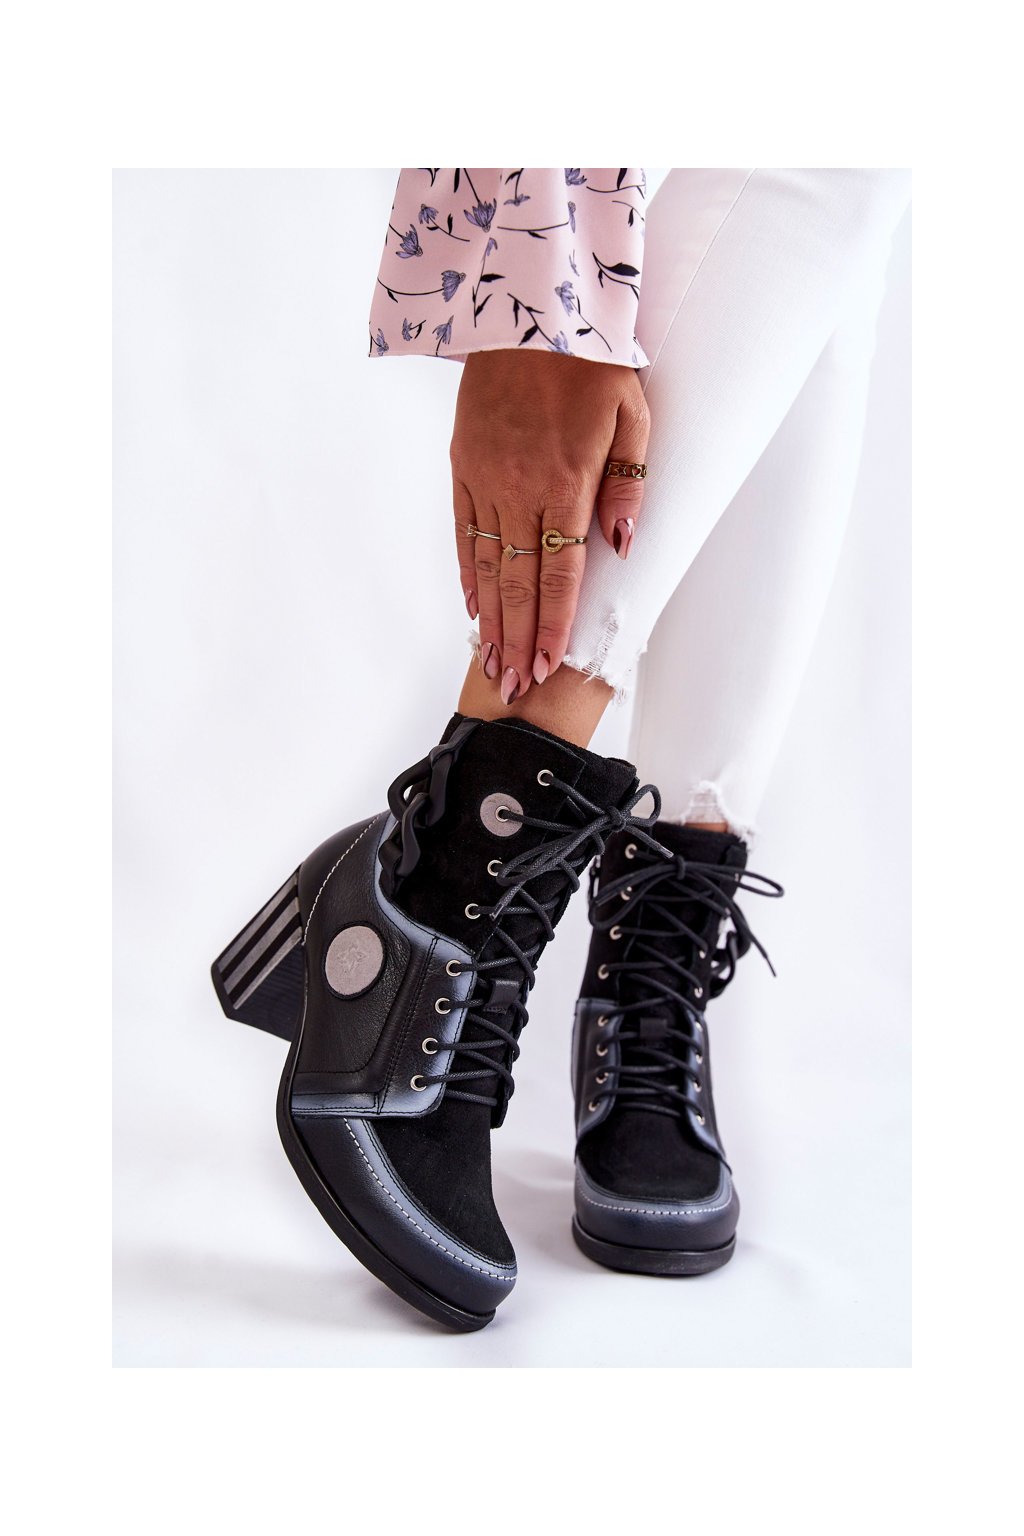 Členkové topánky na podpätku farba čierna kód obuvi 05599-01 CZARNY+BIAŁY